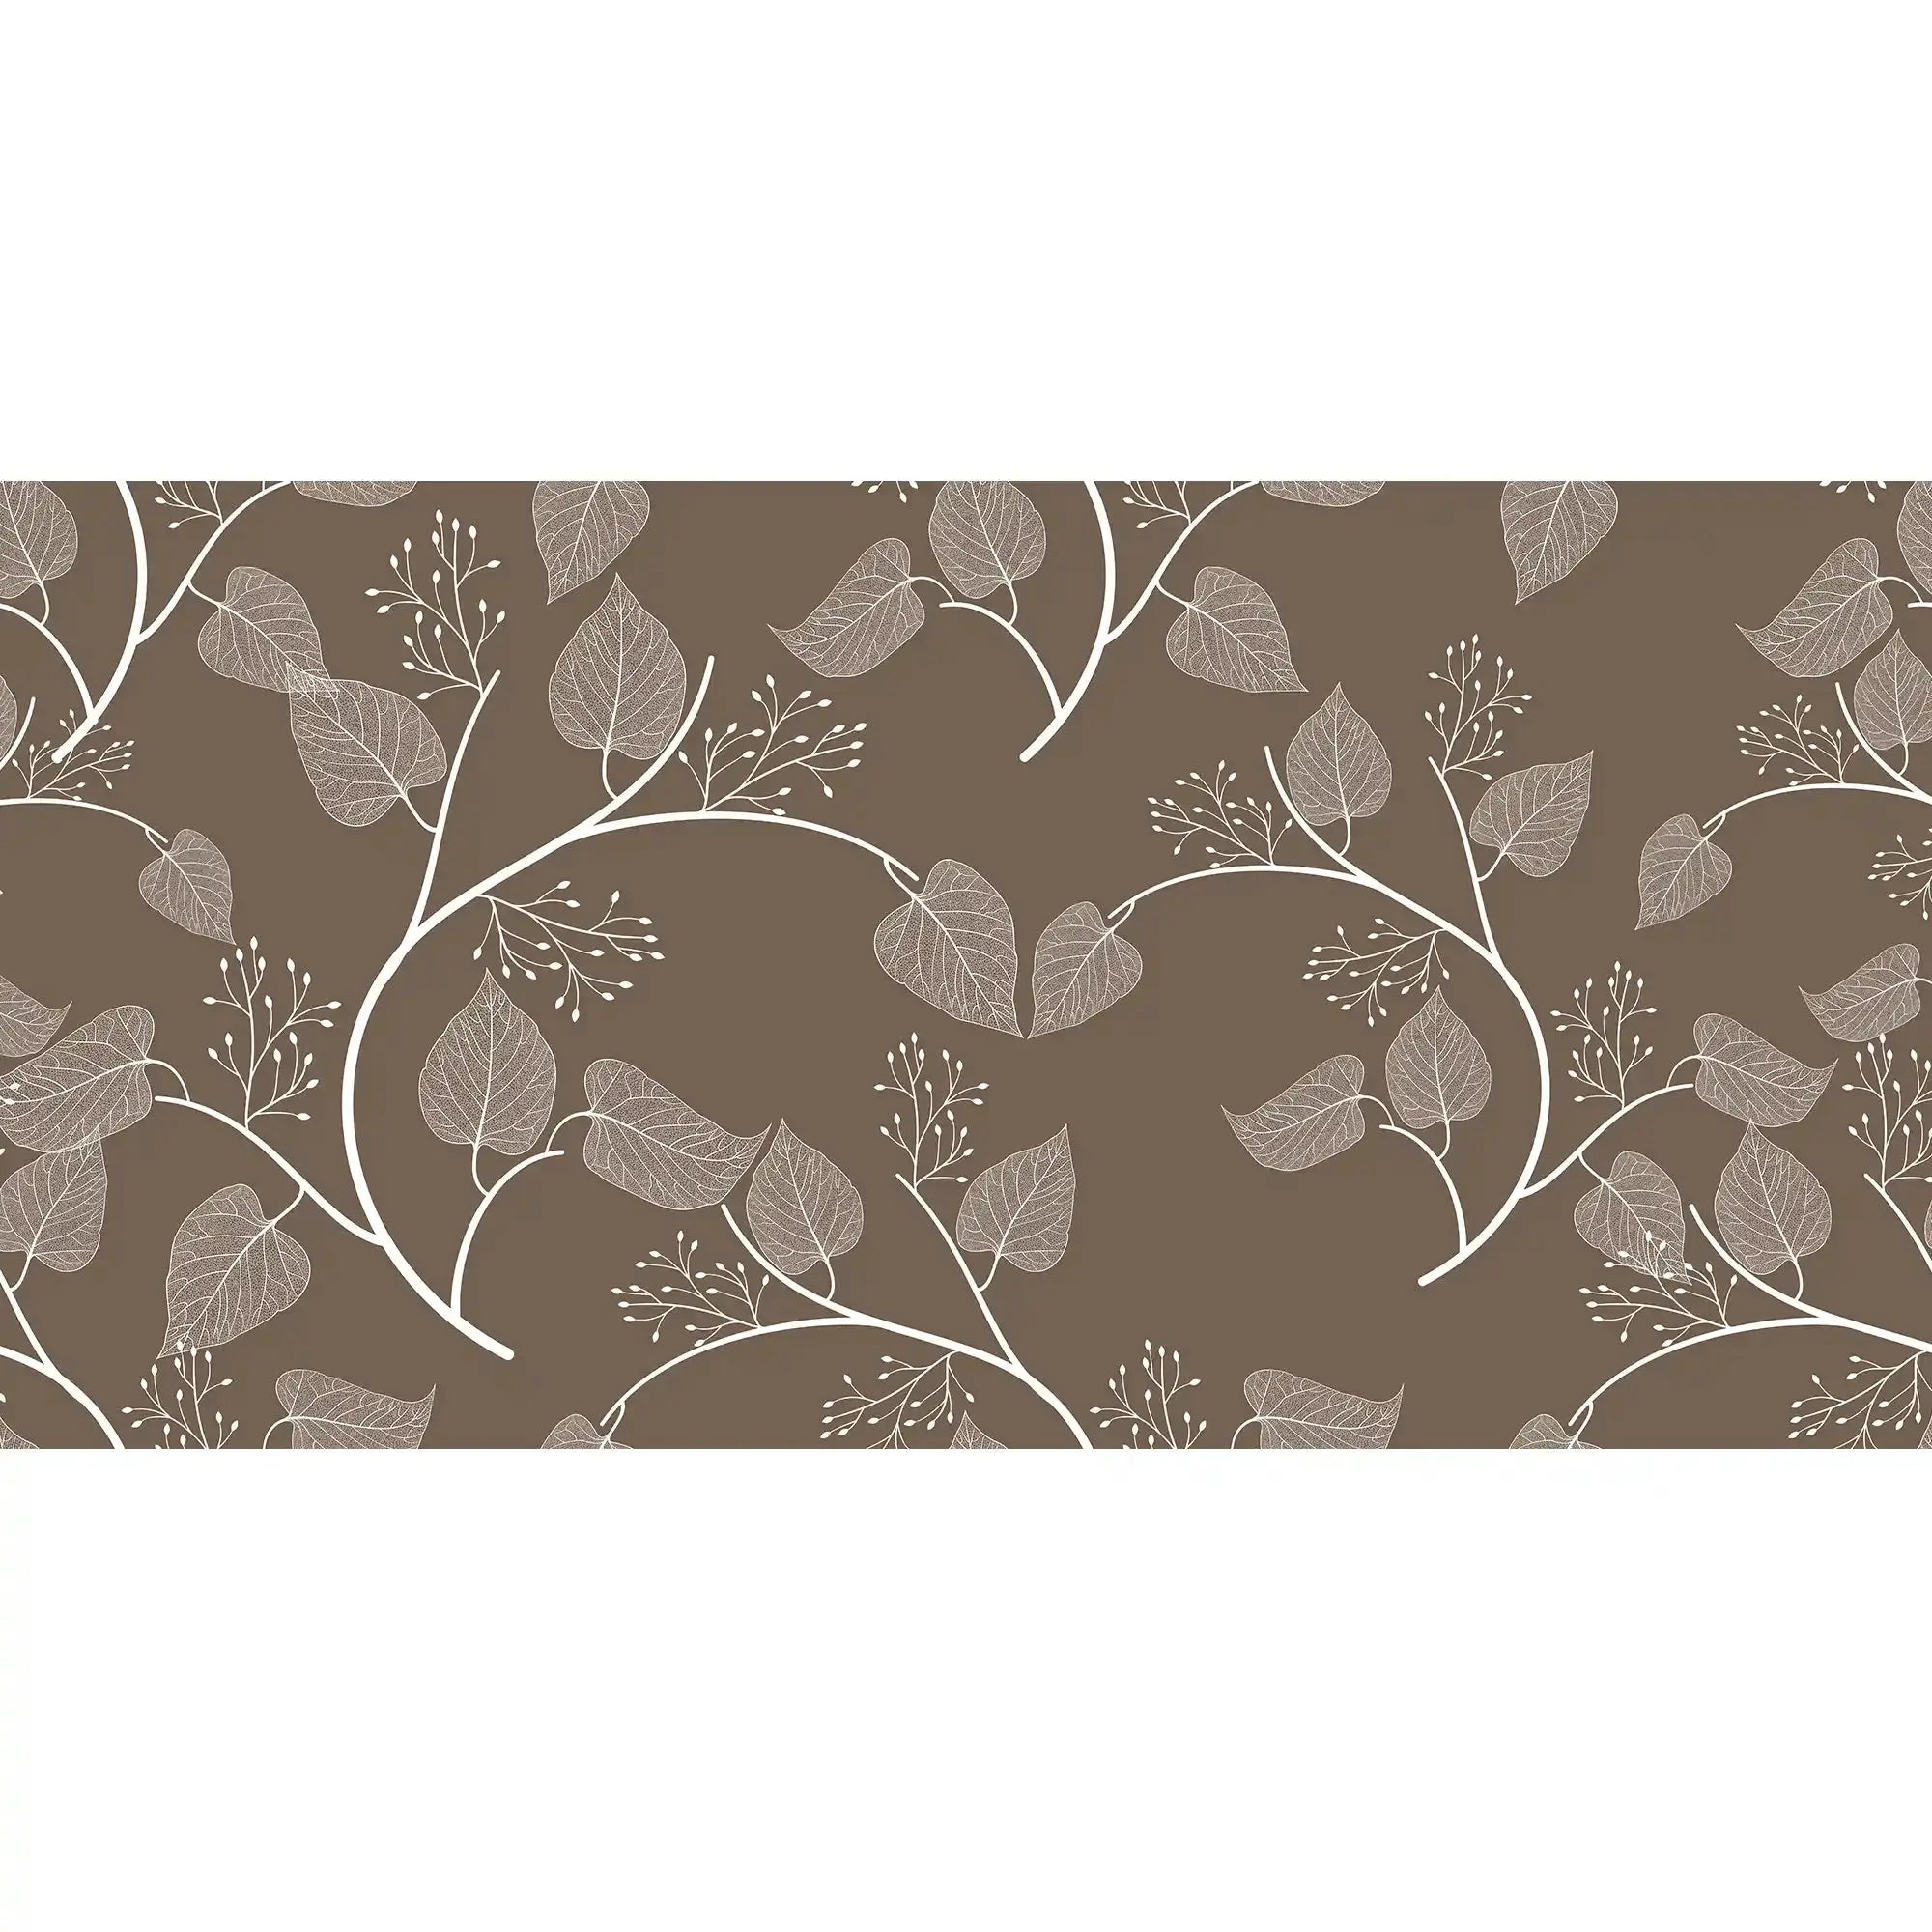 3104-D / Floral Peel and Stick Wallpaper, Botanical Leaf Design Wall Mural - Artevella